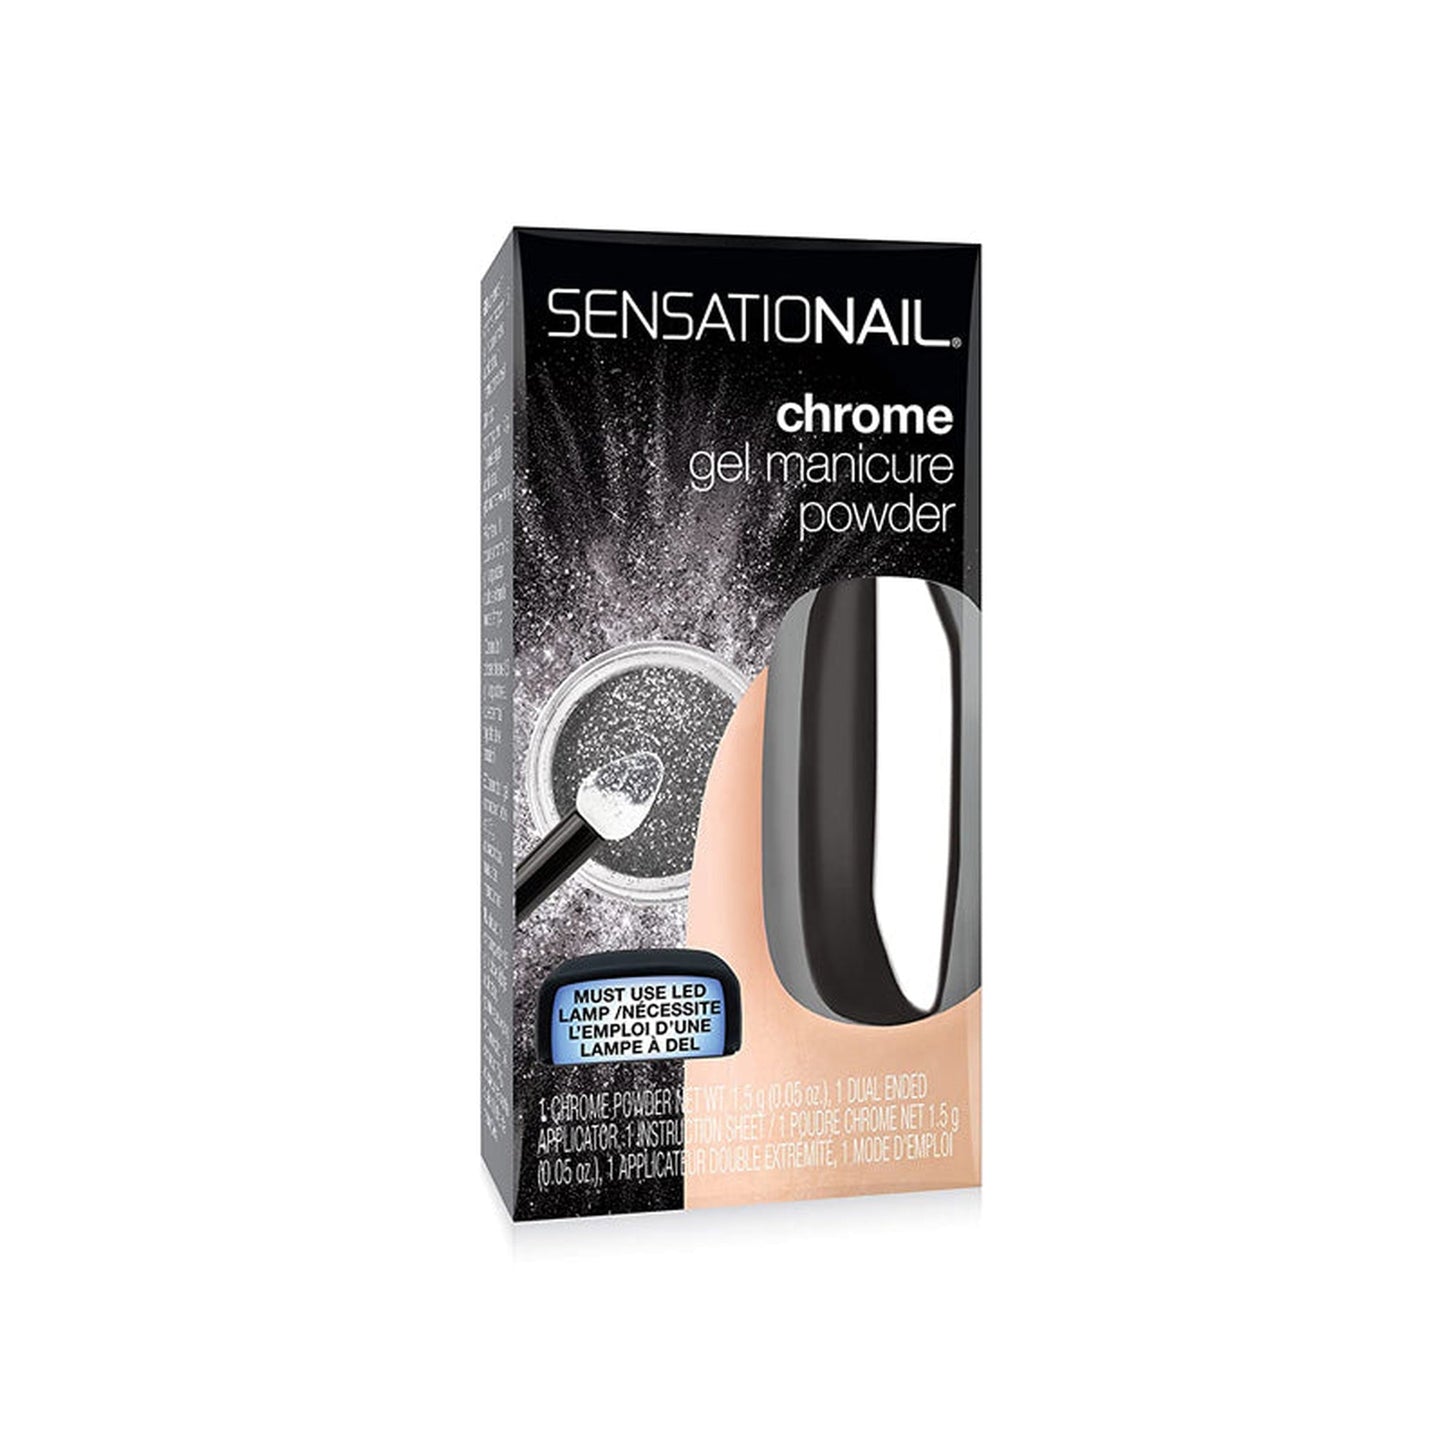 Sensationail Manicure Powder Duo Pack Holographic Silver-SensatioNail-BeautyNmakeup.co.uk